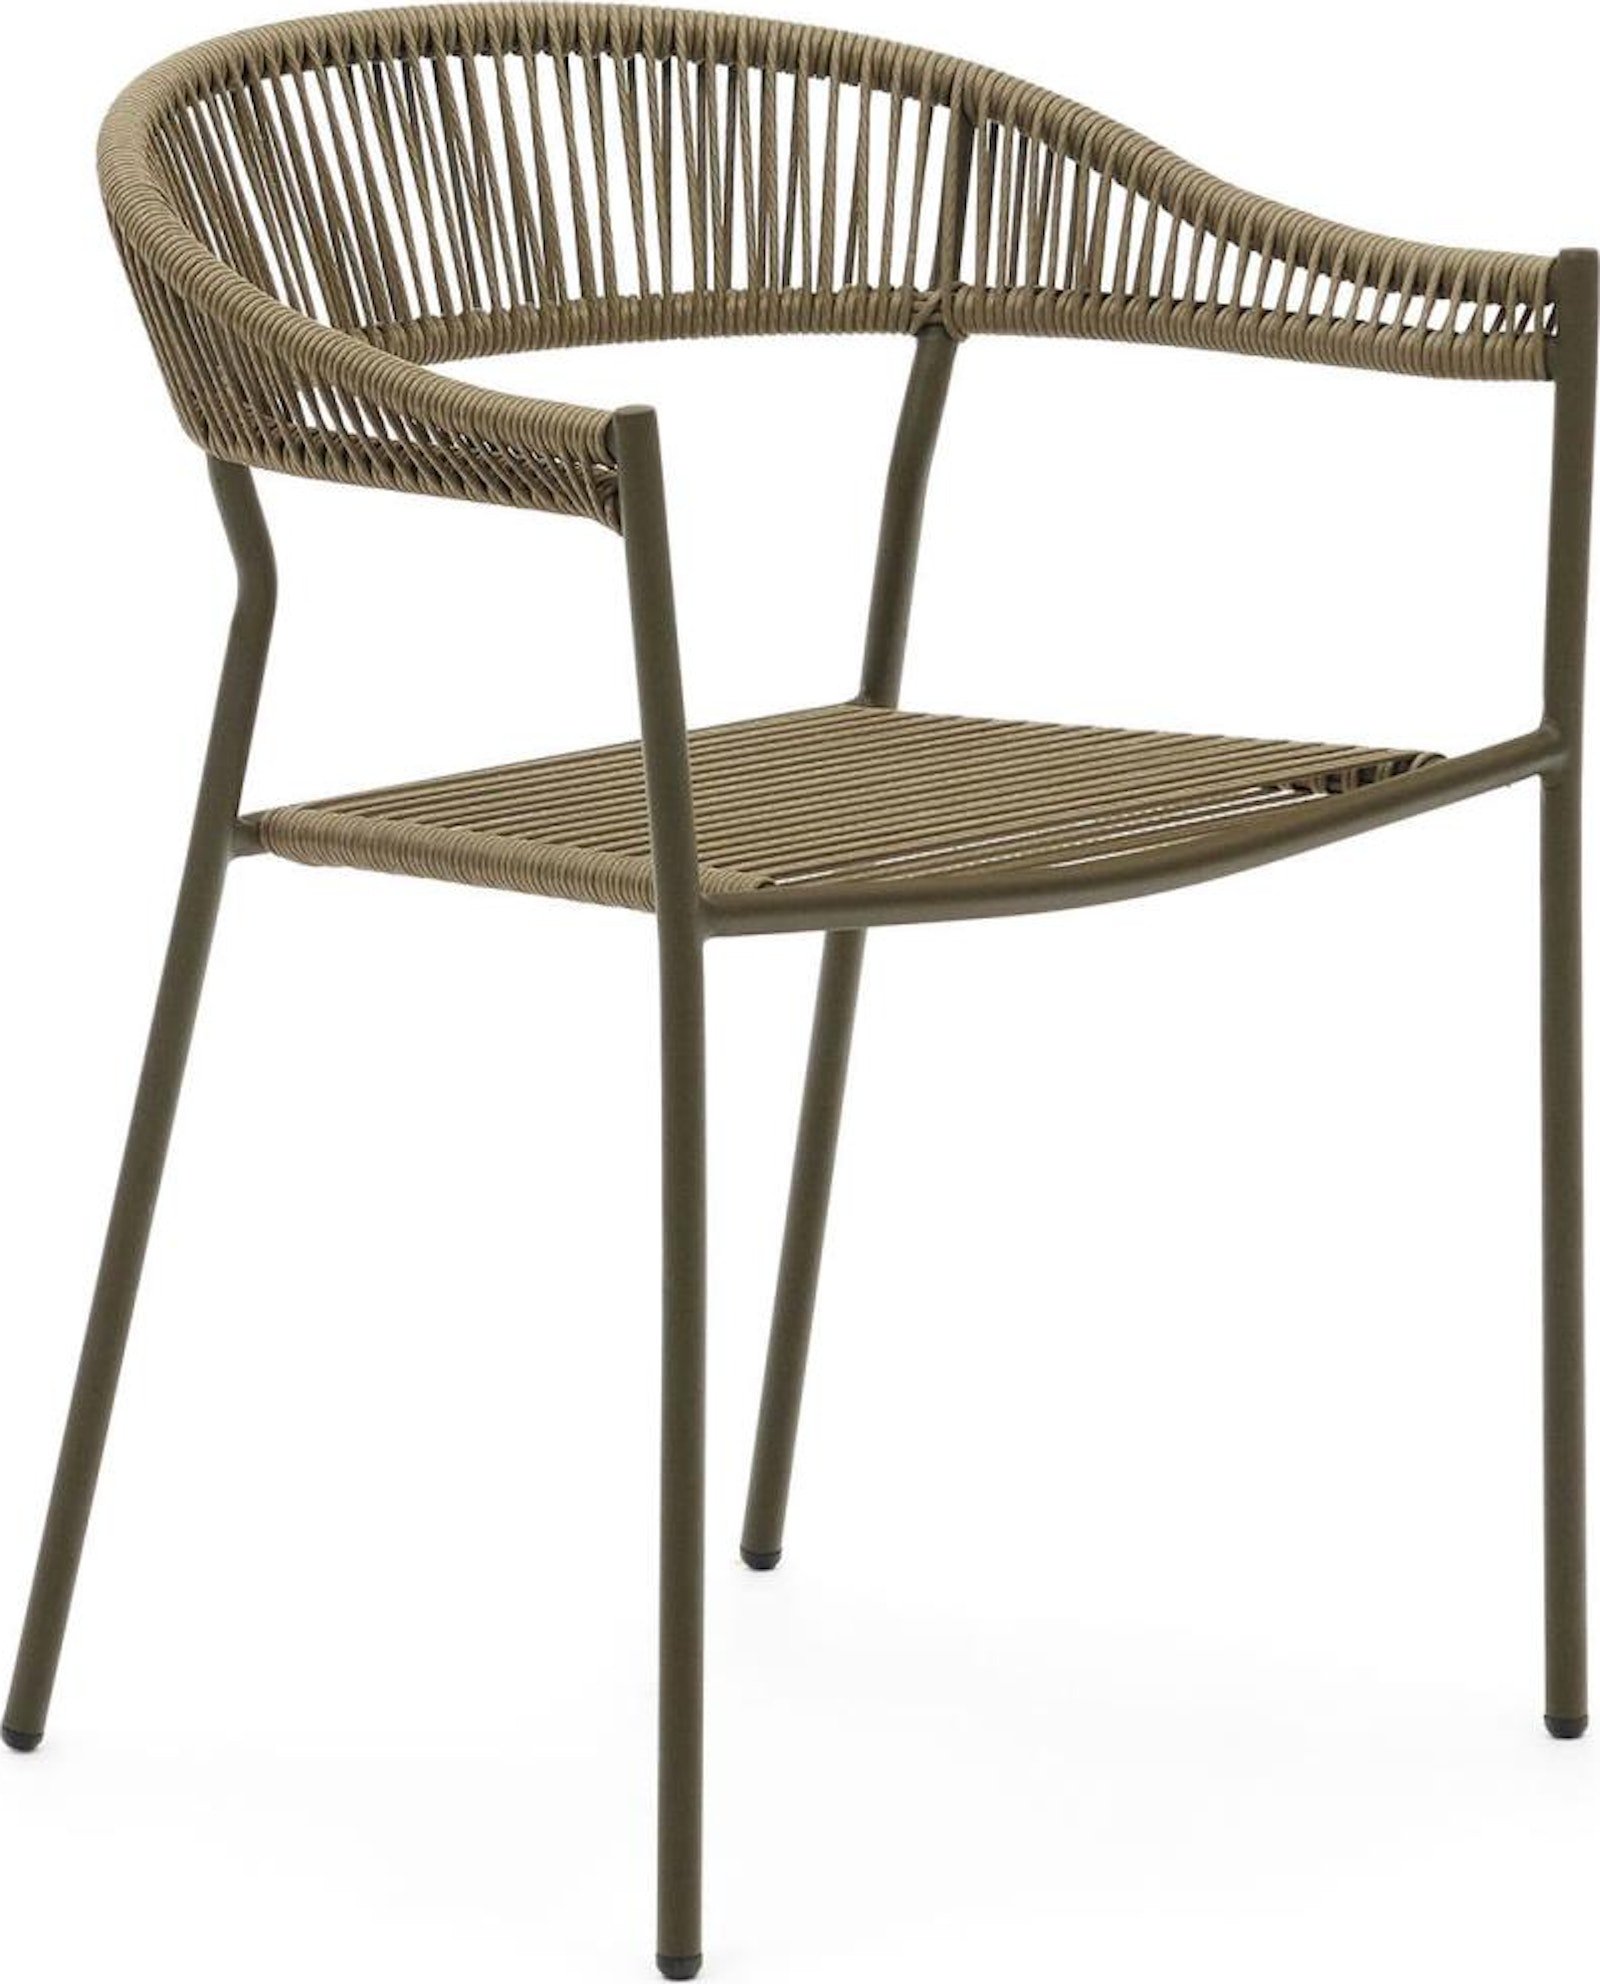 Futadera, Udendørs stol, moderne, nordisk by Kave Home (H: 76 cm. x B: 57 cm. x L: 54 cm., Grøn)